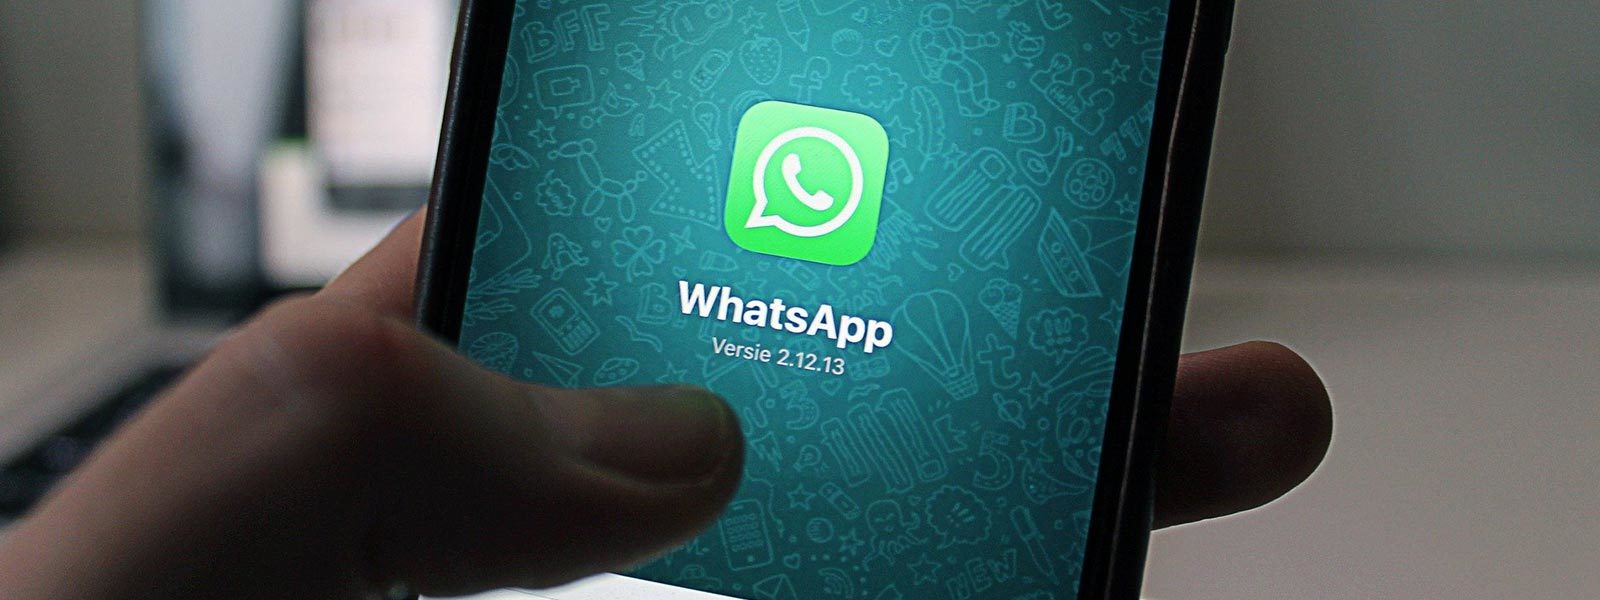 Informativa privacy WhatsApp 2021: tutto quello che c’è da sapere